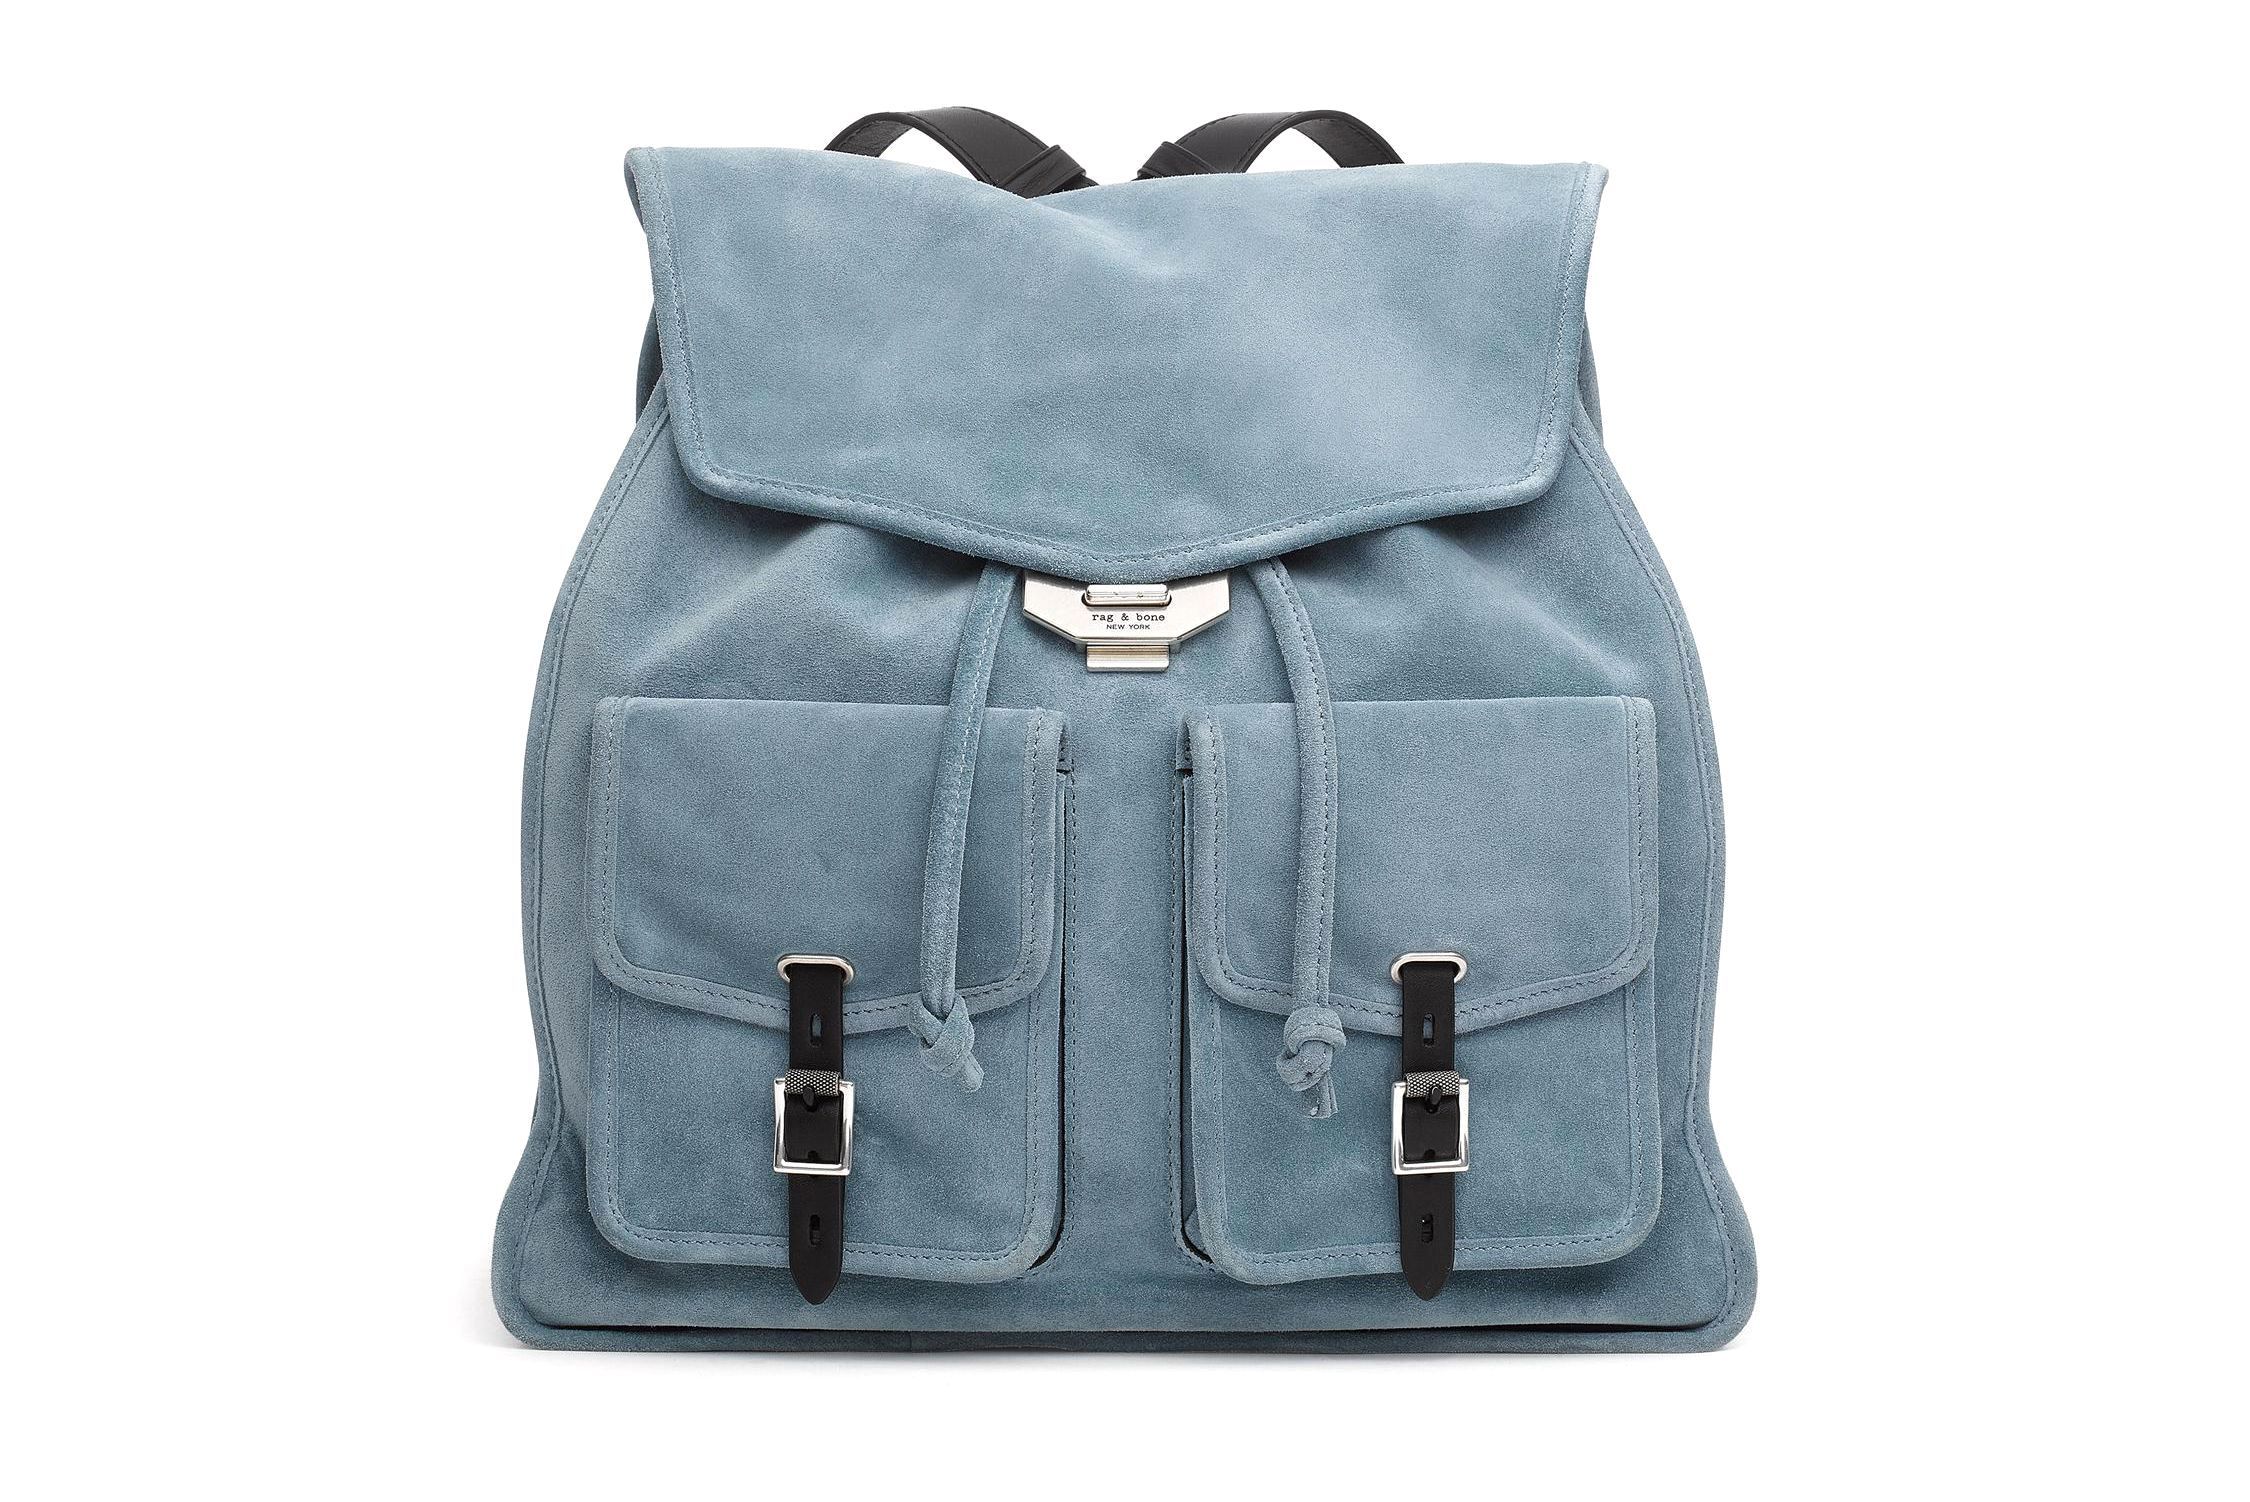 classy backpacks for women